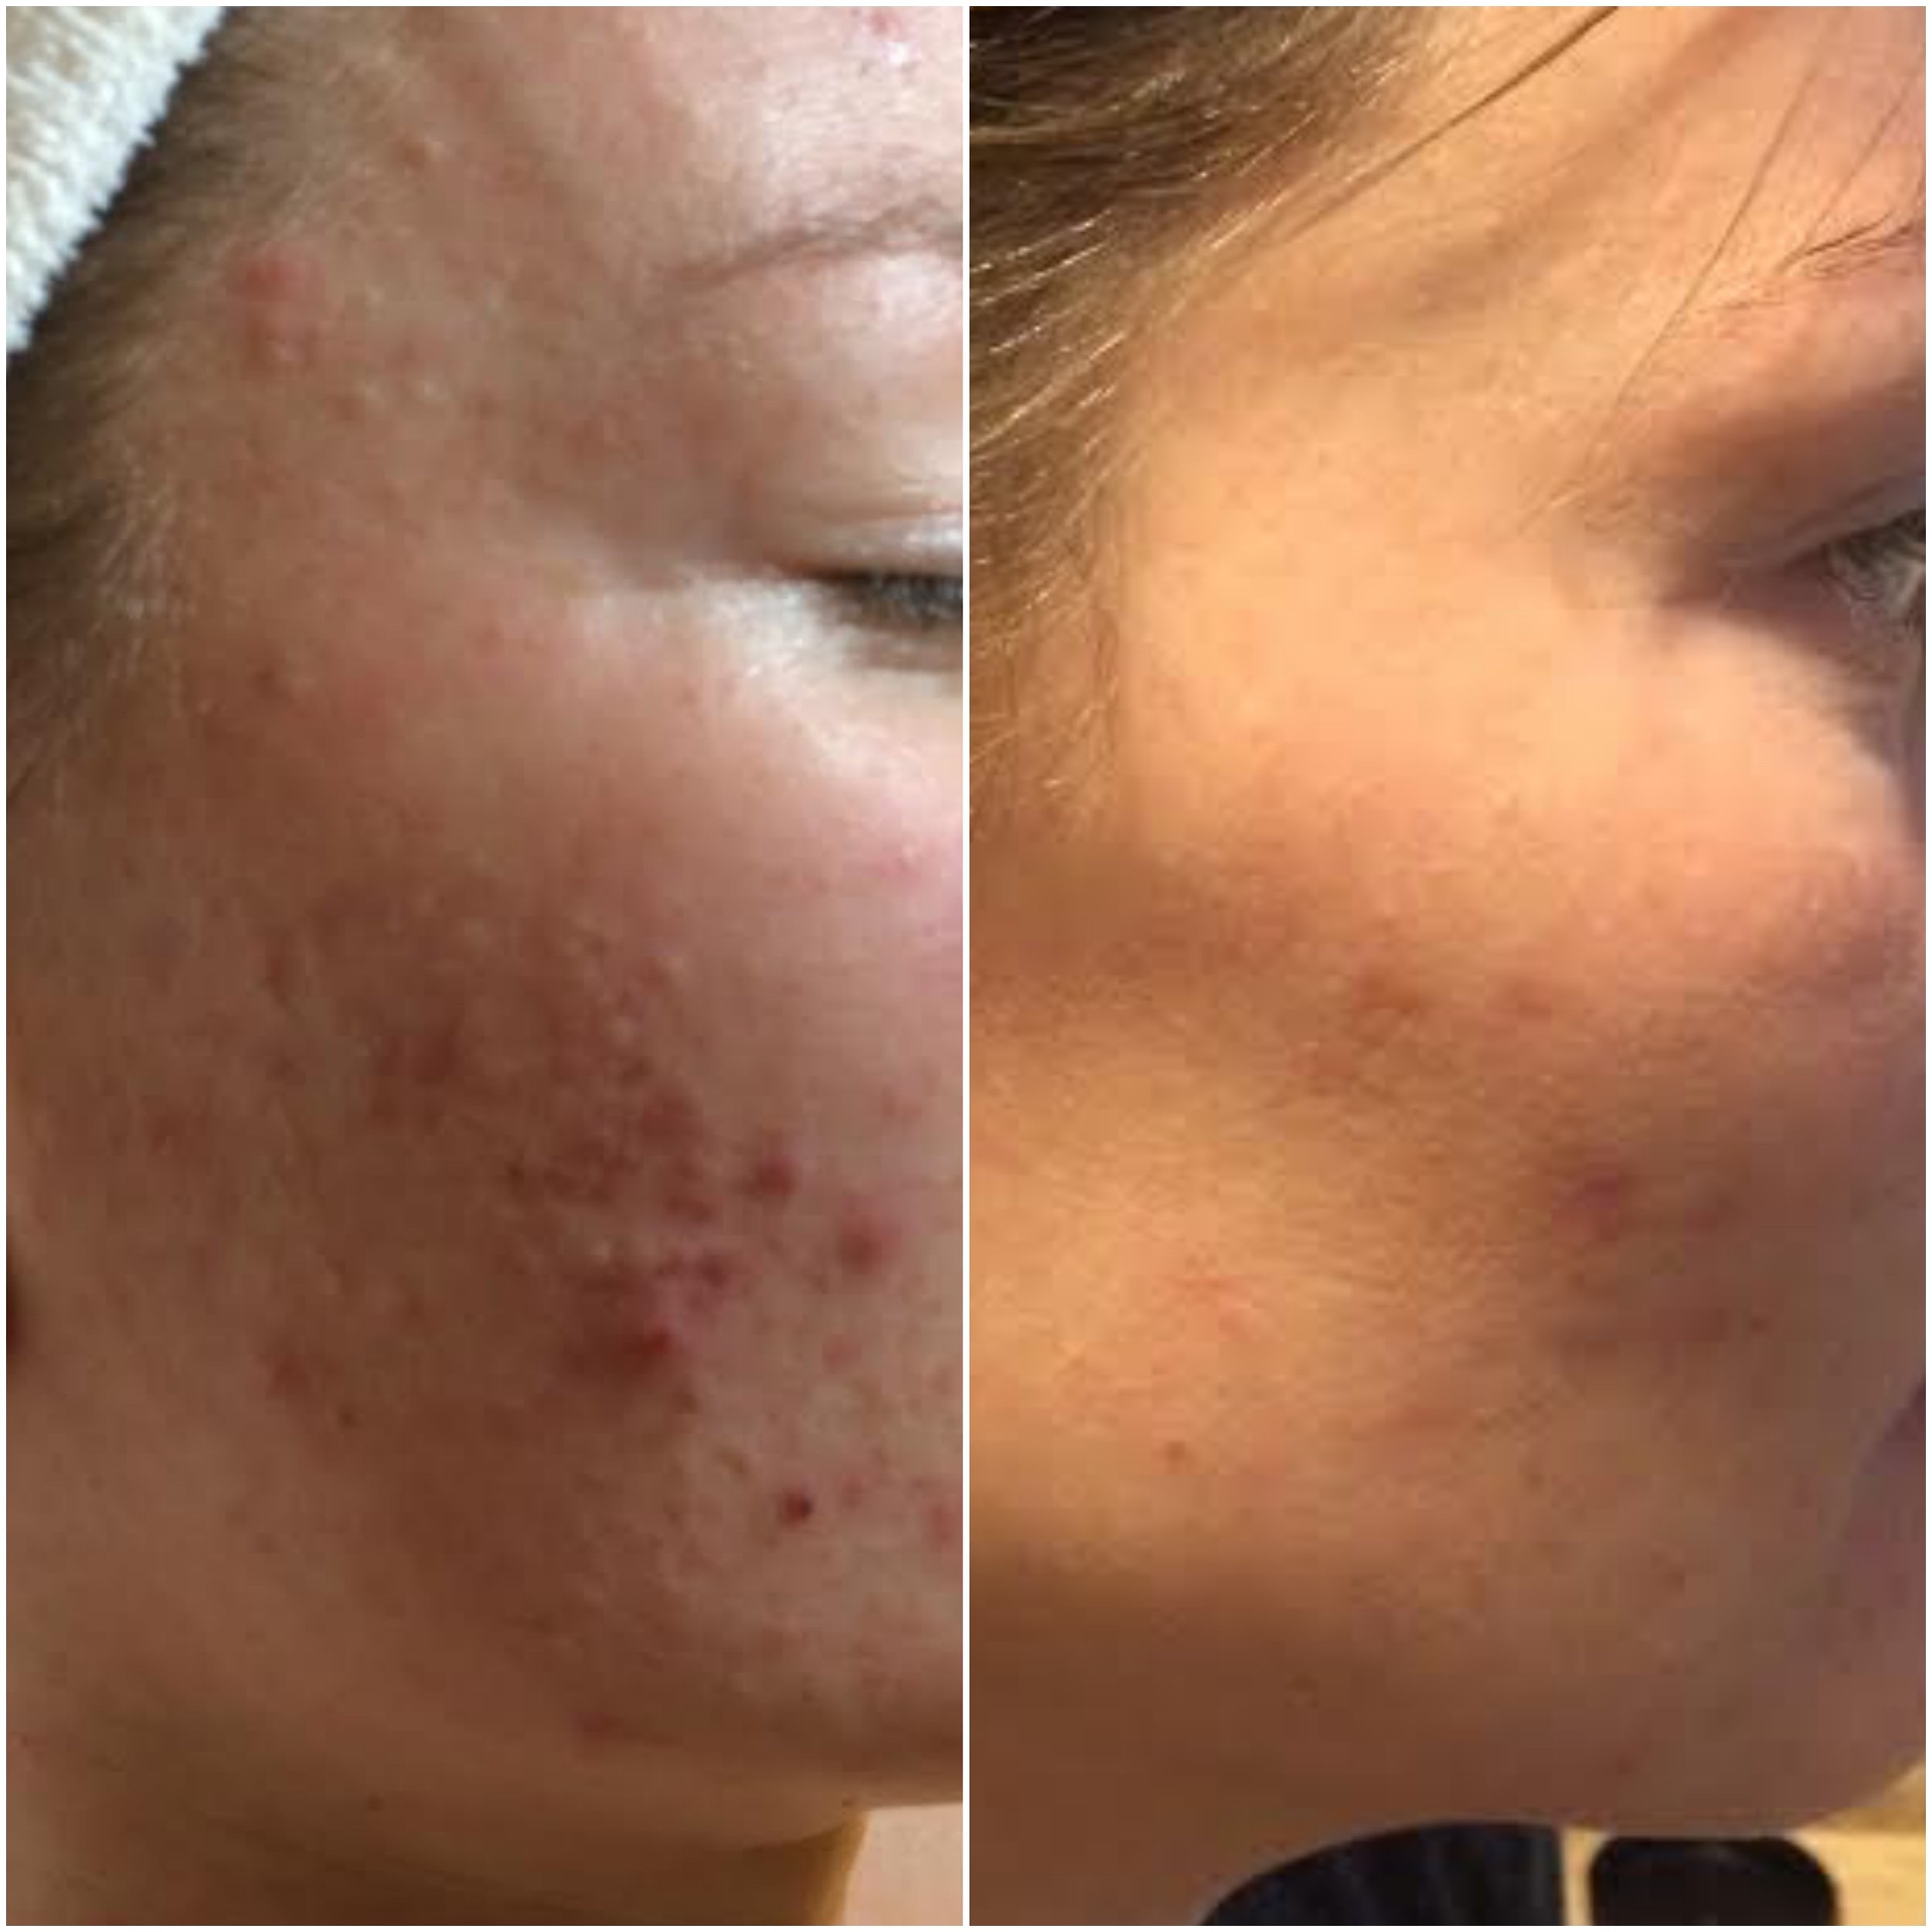   Cystic acne cleared using NŪR hi-tech facial series  